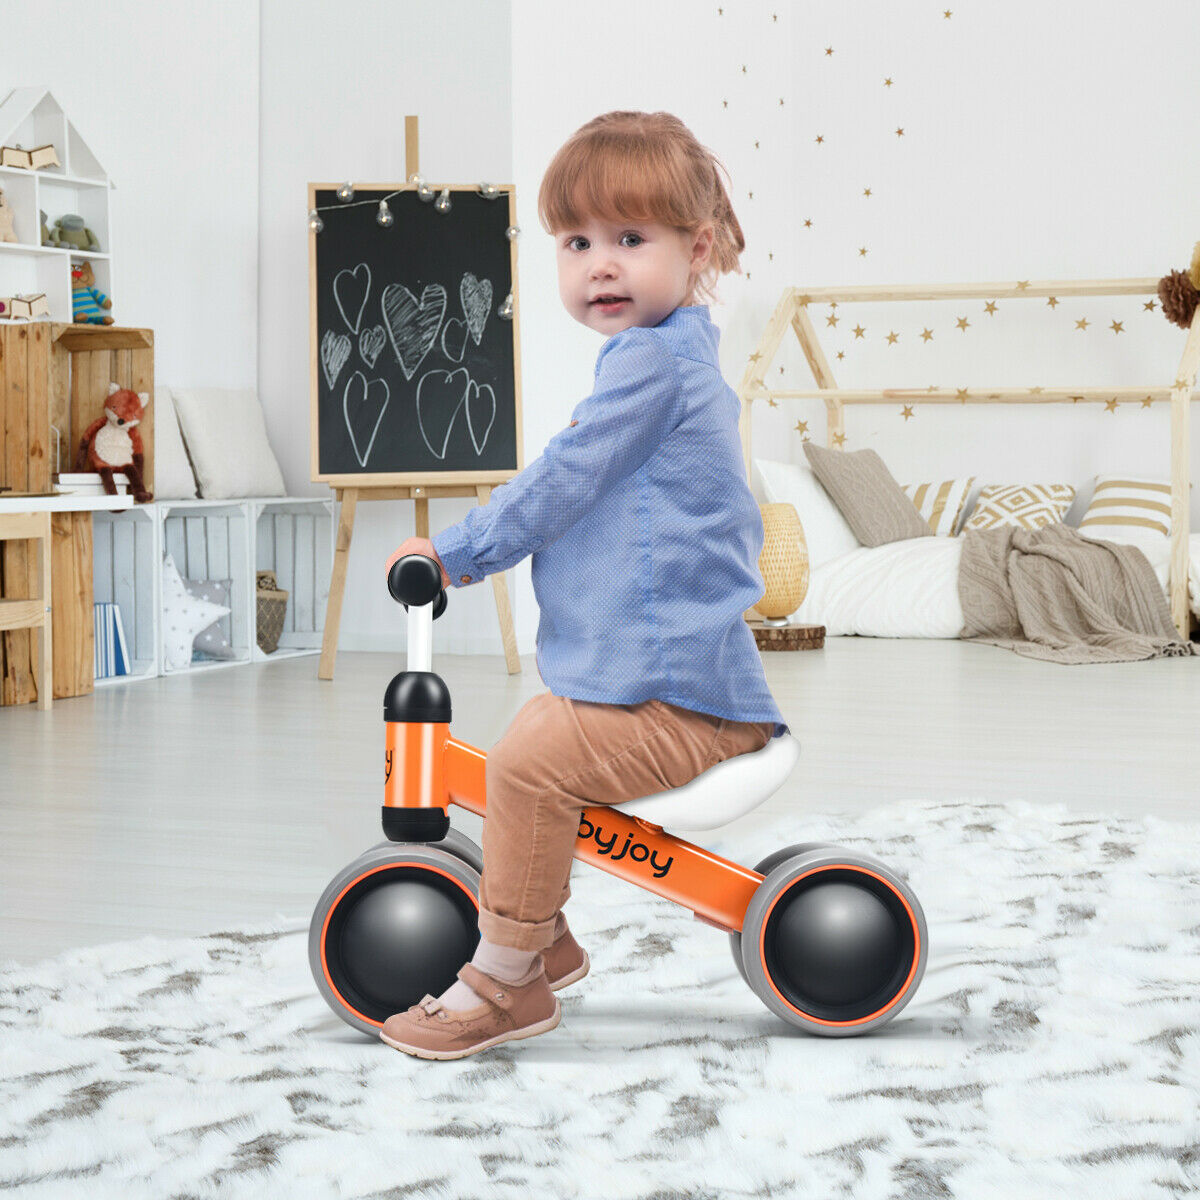 Babyjoy 4 Wheels Baby Balance Bike Children Walker No-Pedal Toddler Toys Rides Orange - image 2 of 10